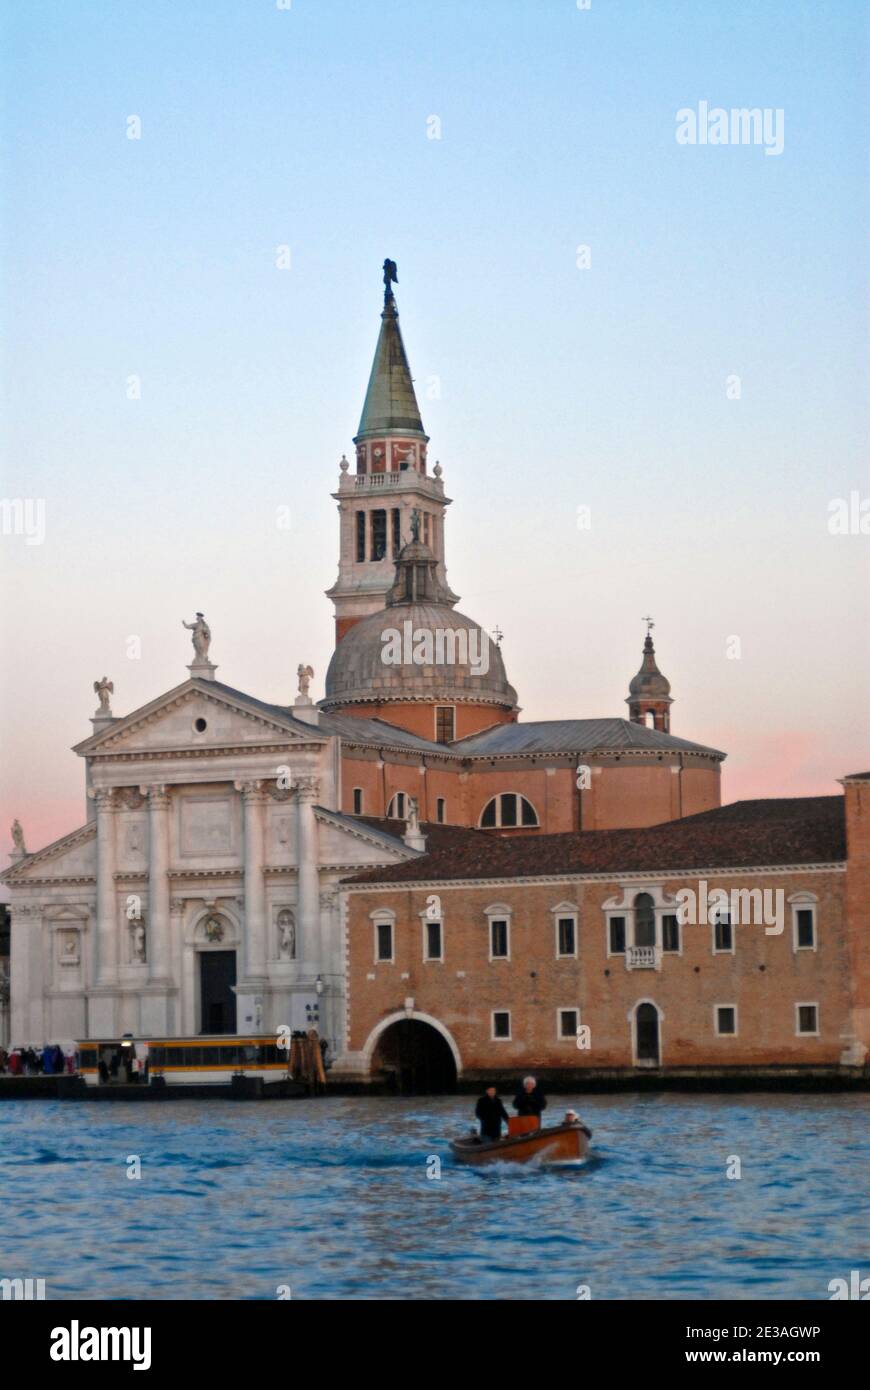 L'île de San Giorgio Maggiore, à Venise, Italie Banque D'Images